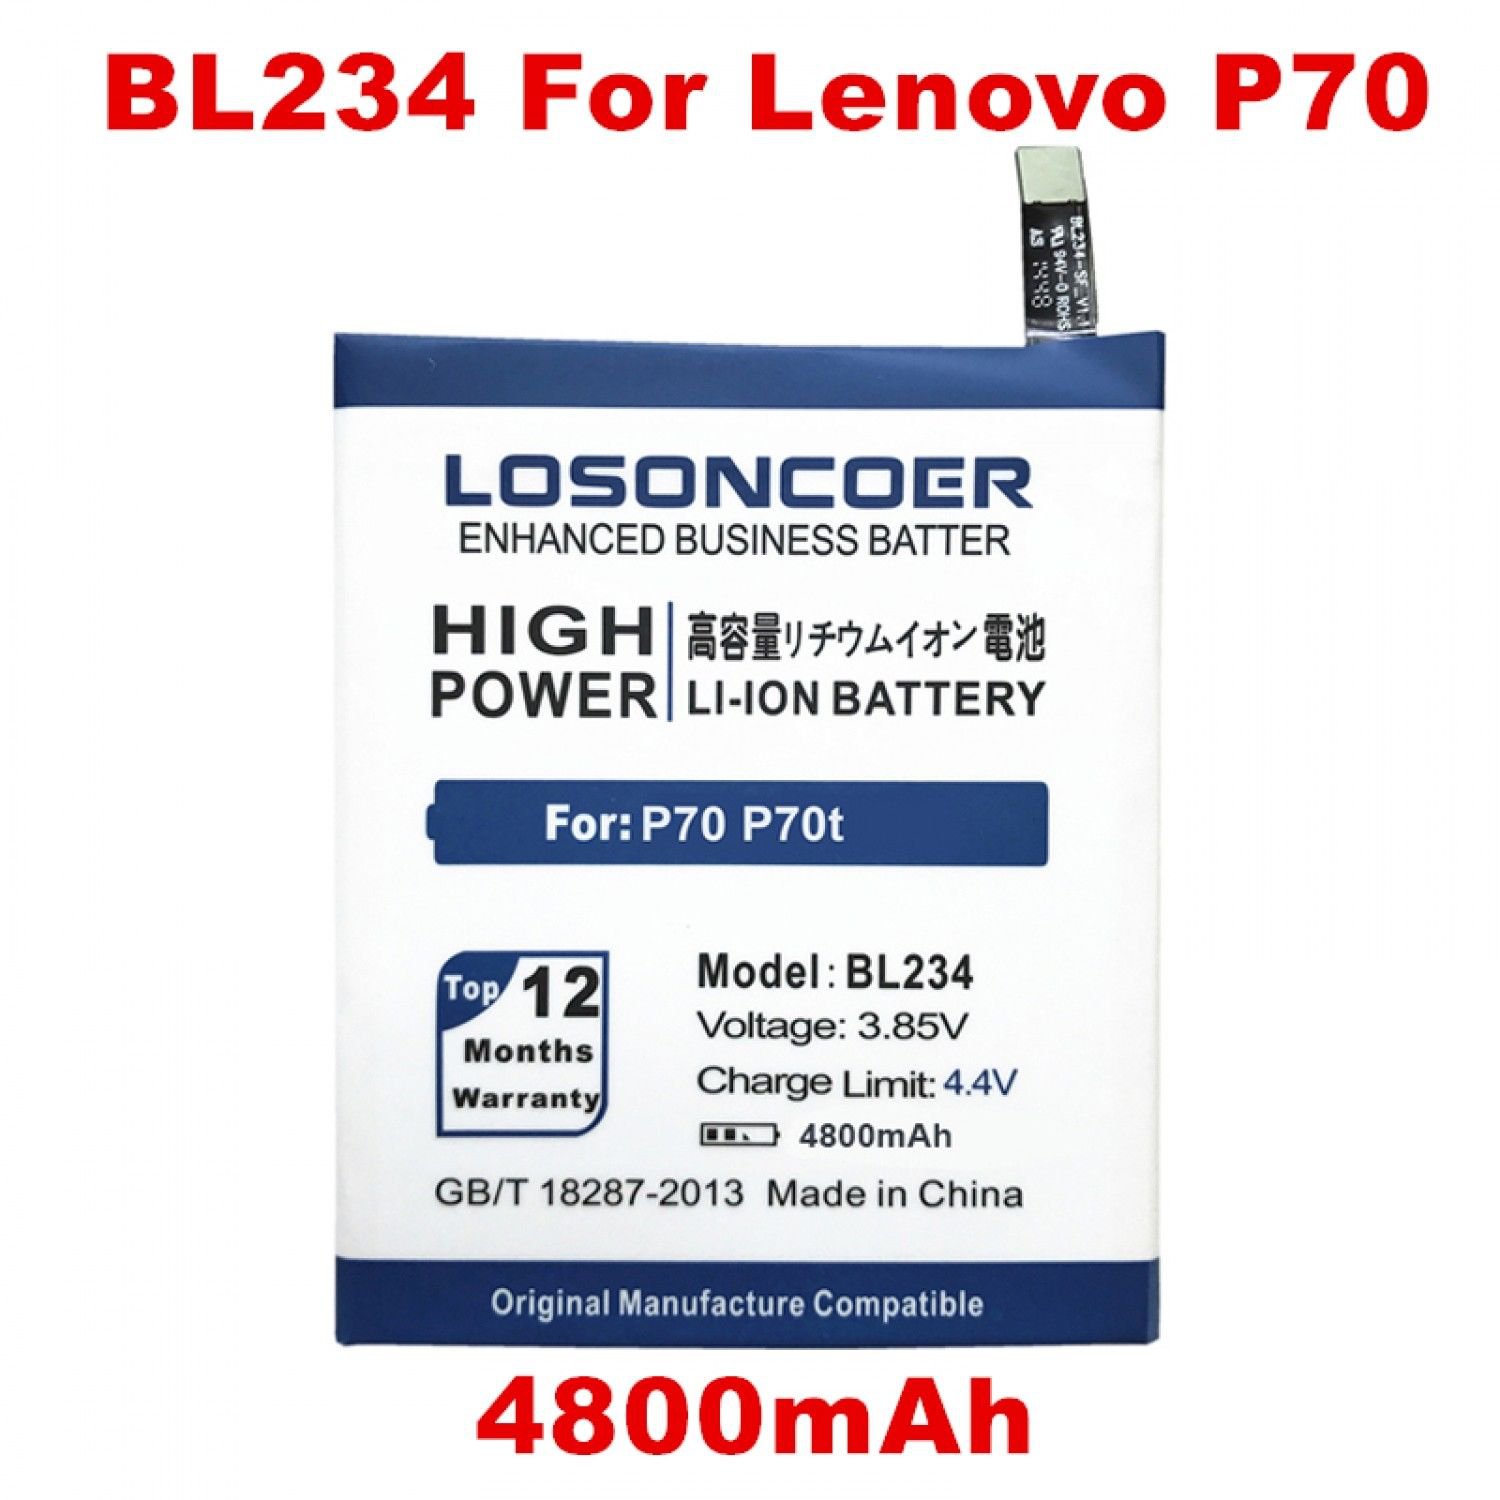 helio p70 price 18000 mah battery